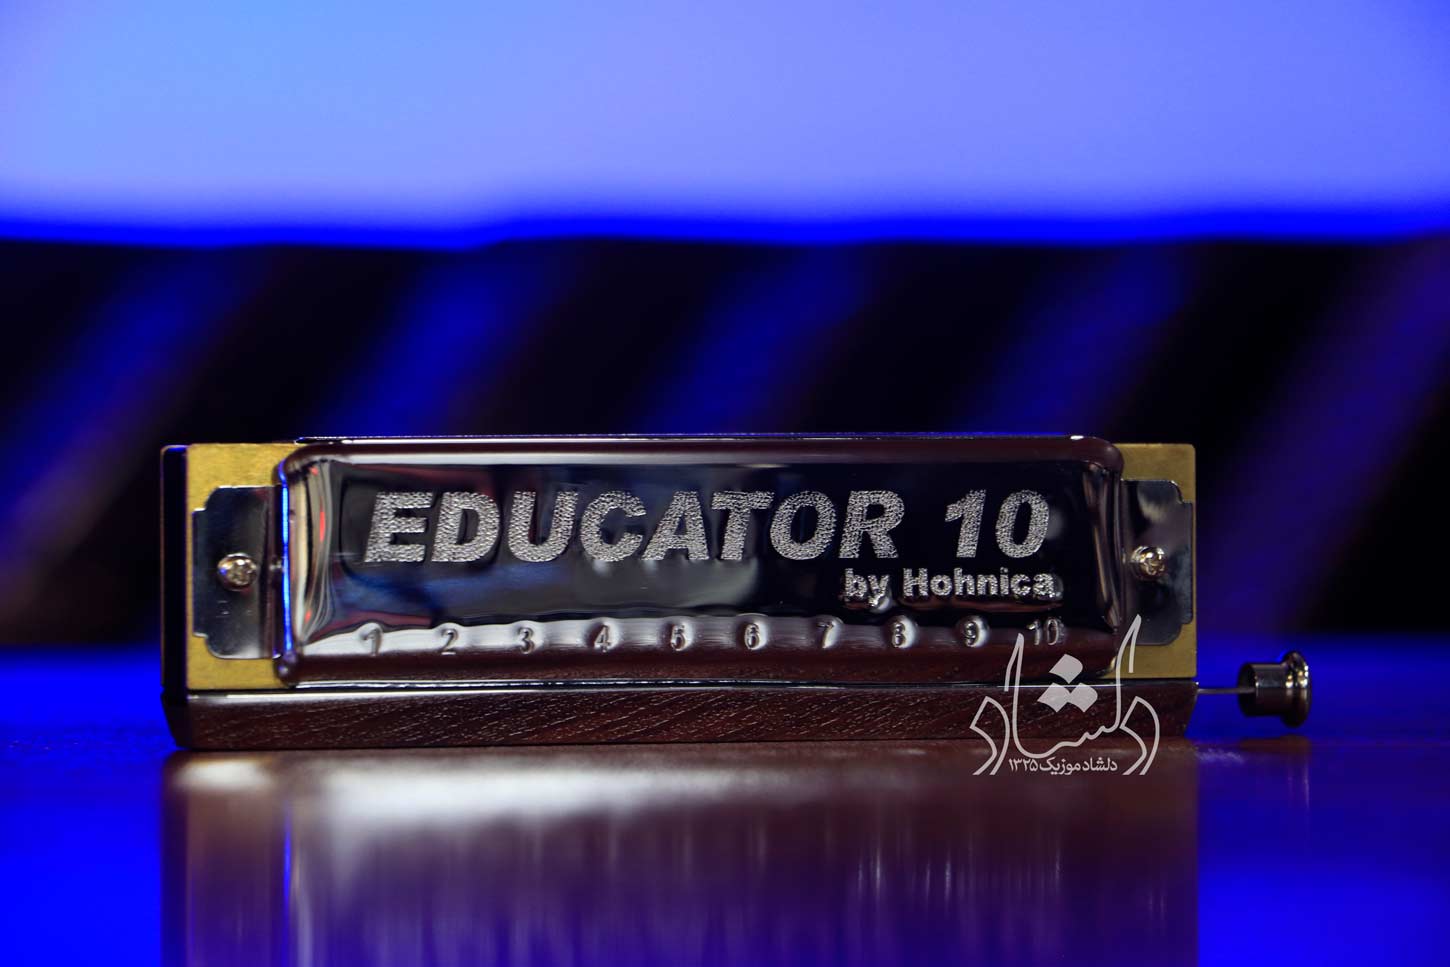 سازدهنی هوهنیکا مدل Educator10